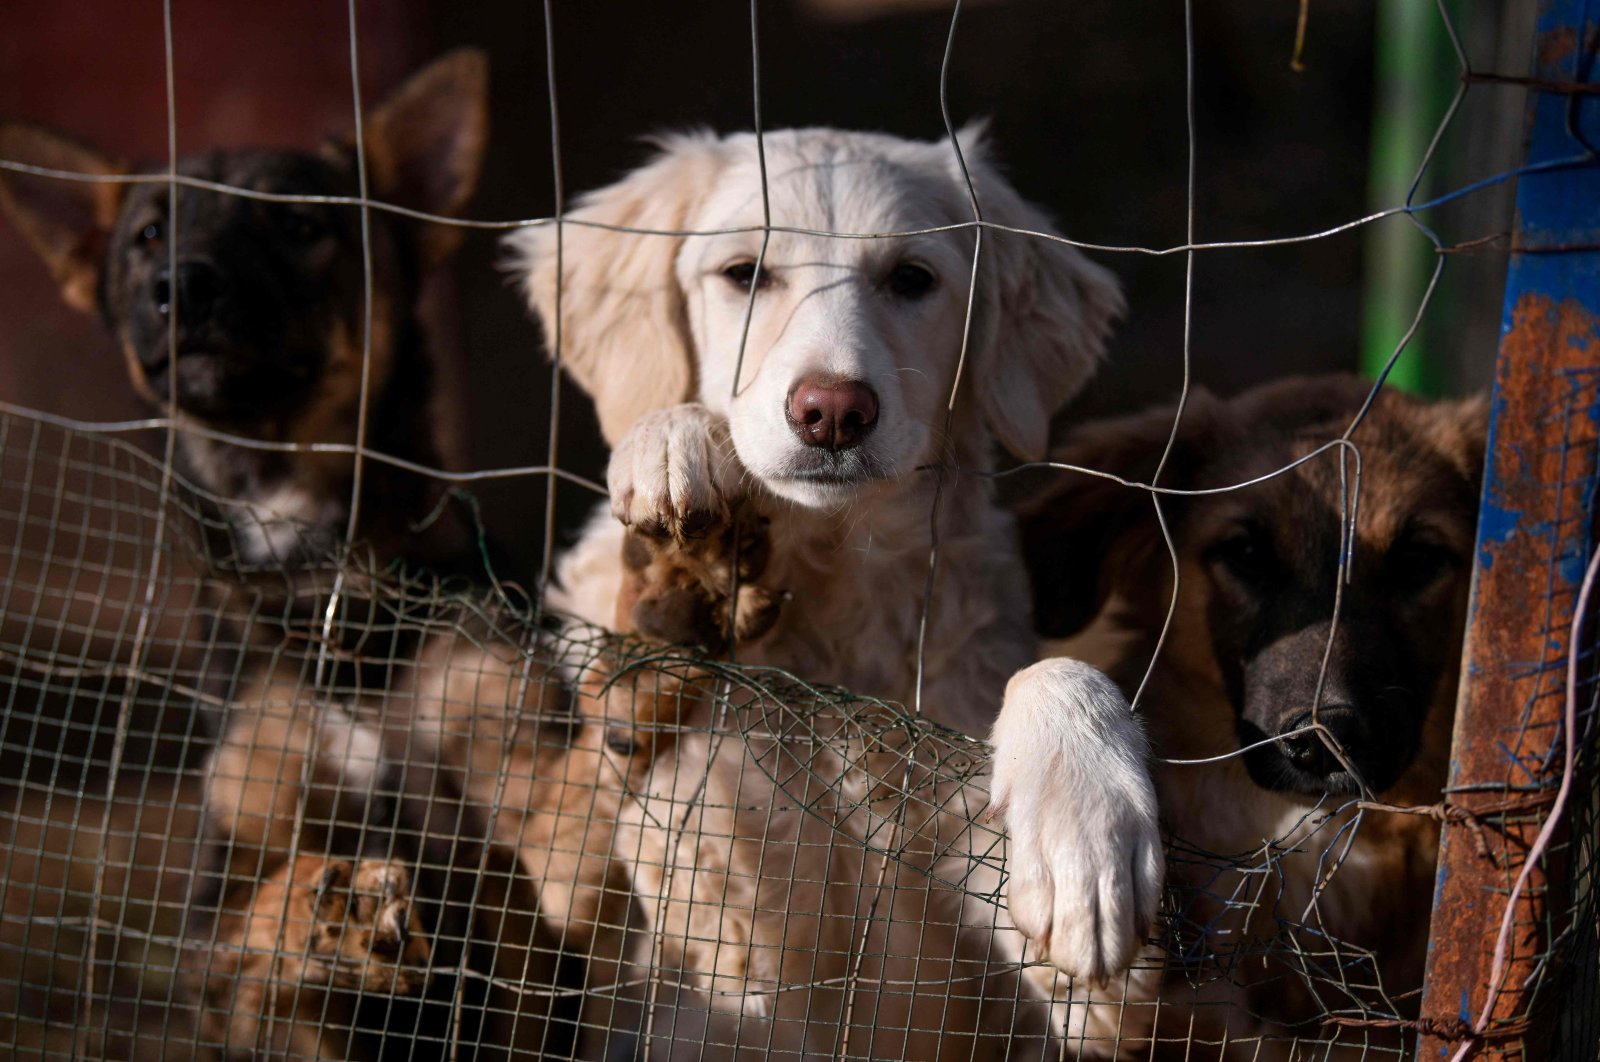 Cinta mengalahkan segalanya: Duo menjembatani perpecahan etnis dengan perlindungan anjing liar